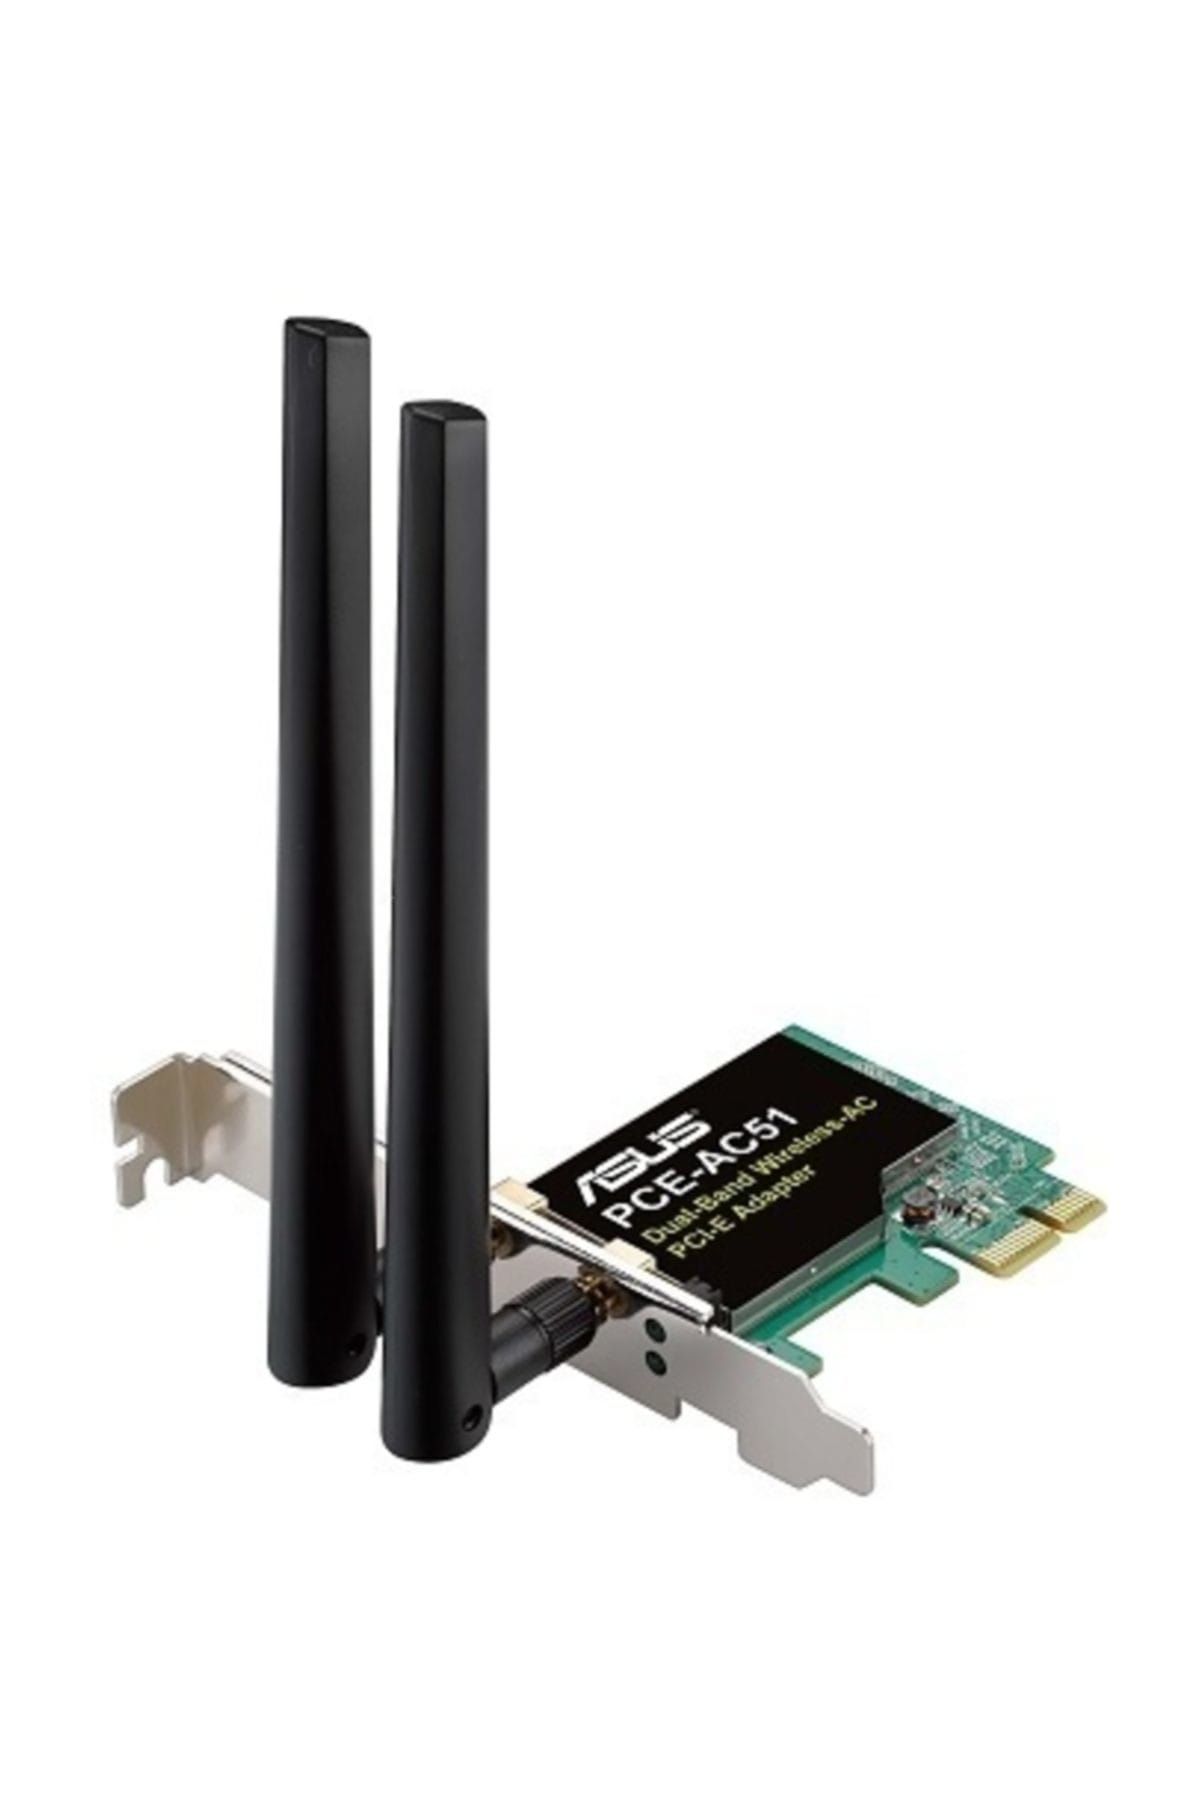 ASUS Marka: Pce-ac51 Dualband-kablosuz Pcıe Adaptör Kategori: Network Aksesuarları